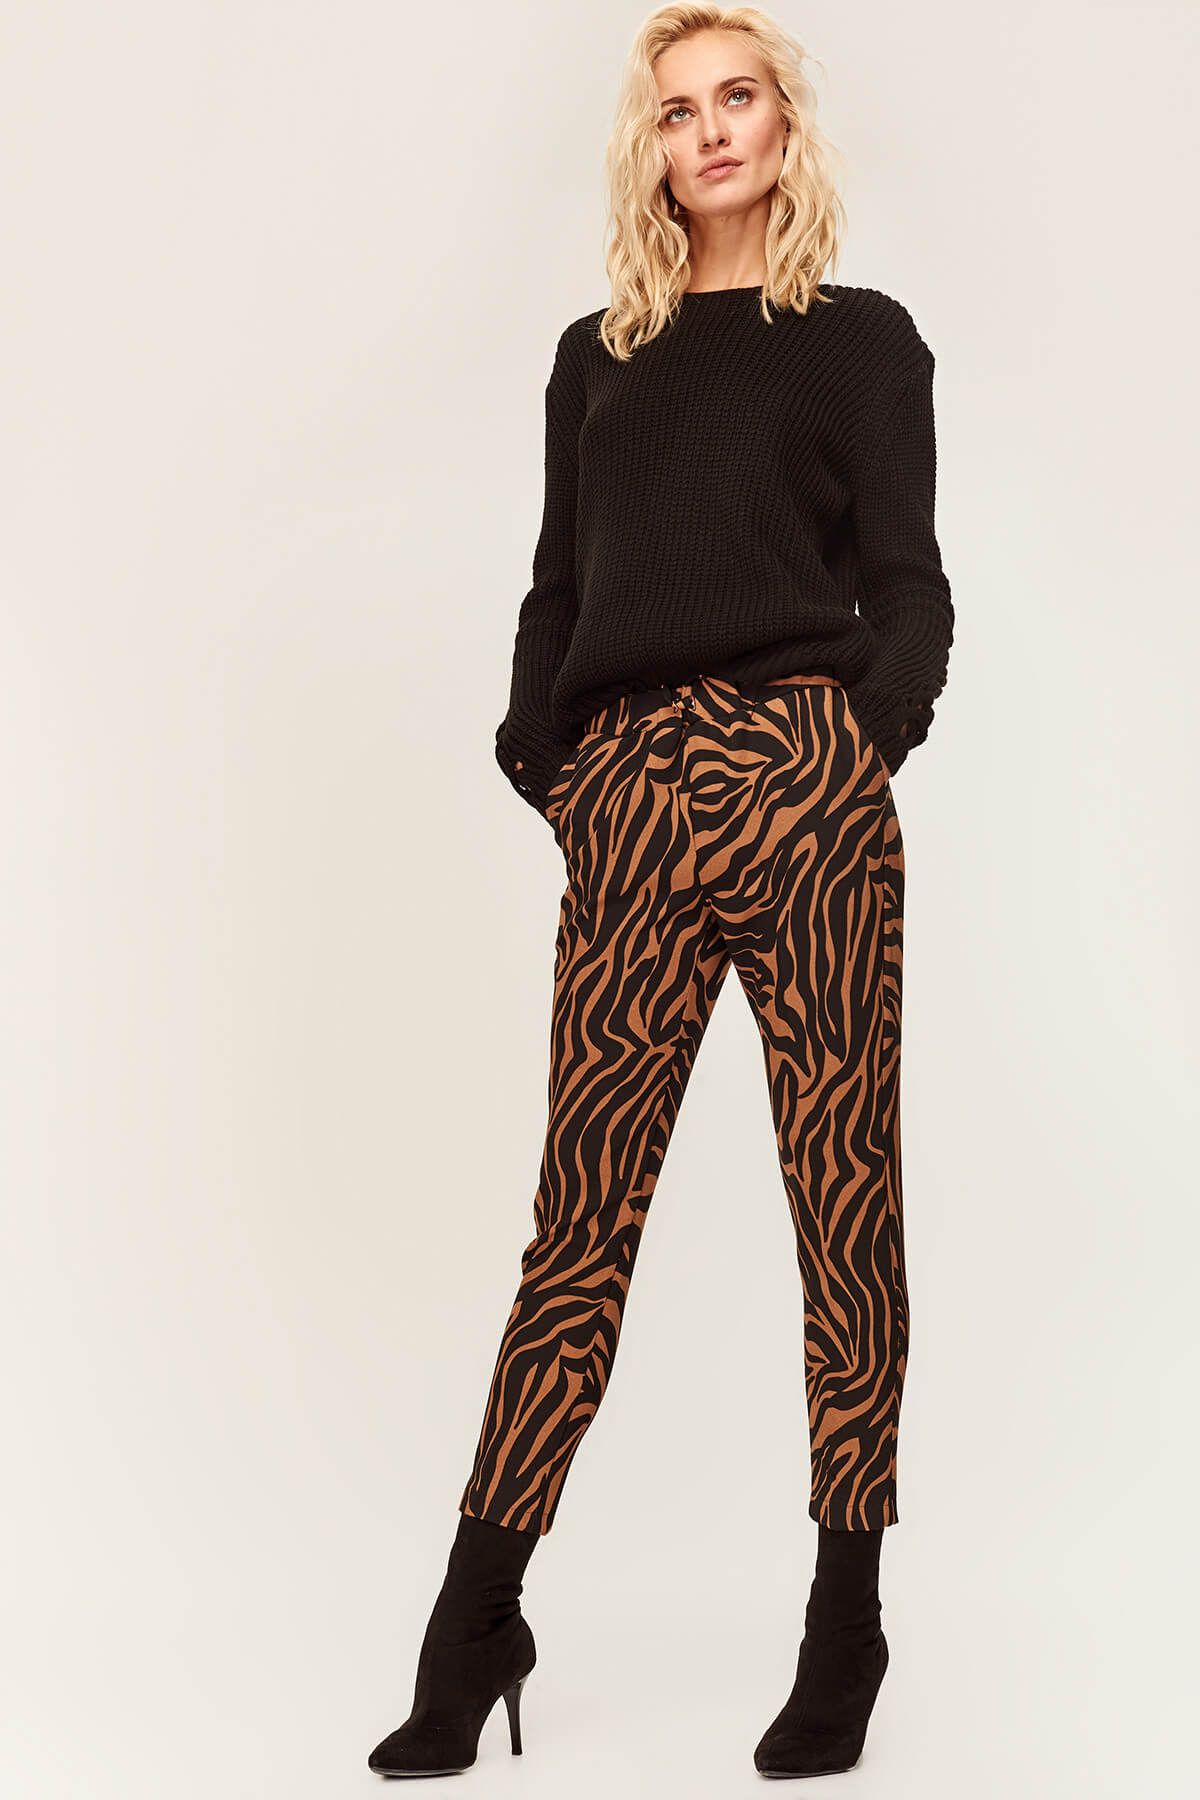 TRENDYOLMİLLA Tarçın Zebra Desenli Pantolon TOFAW19ST0211